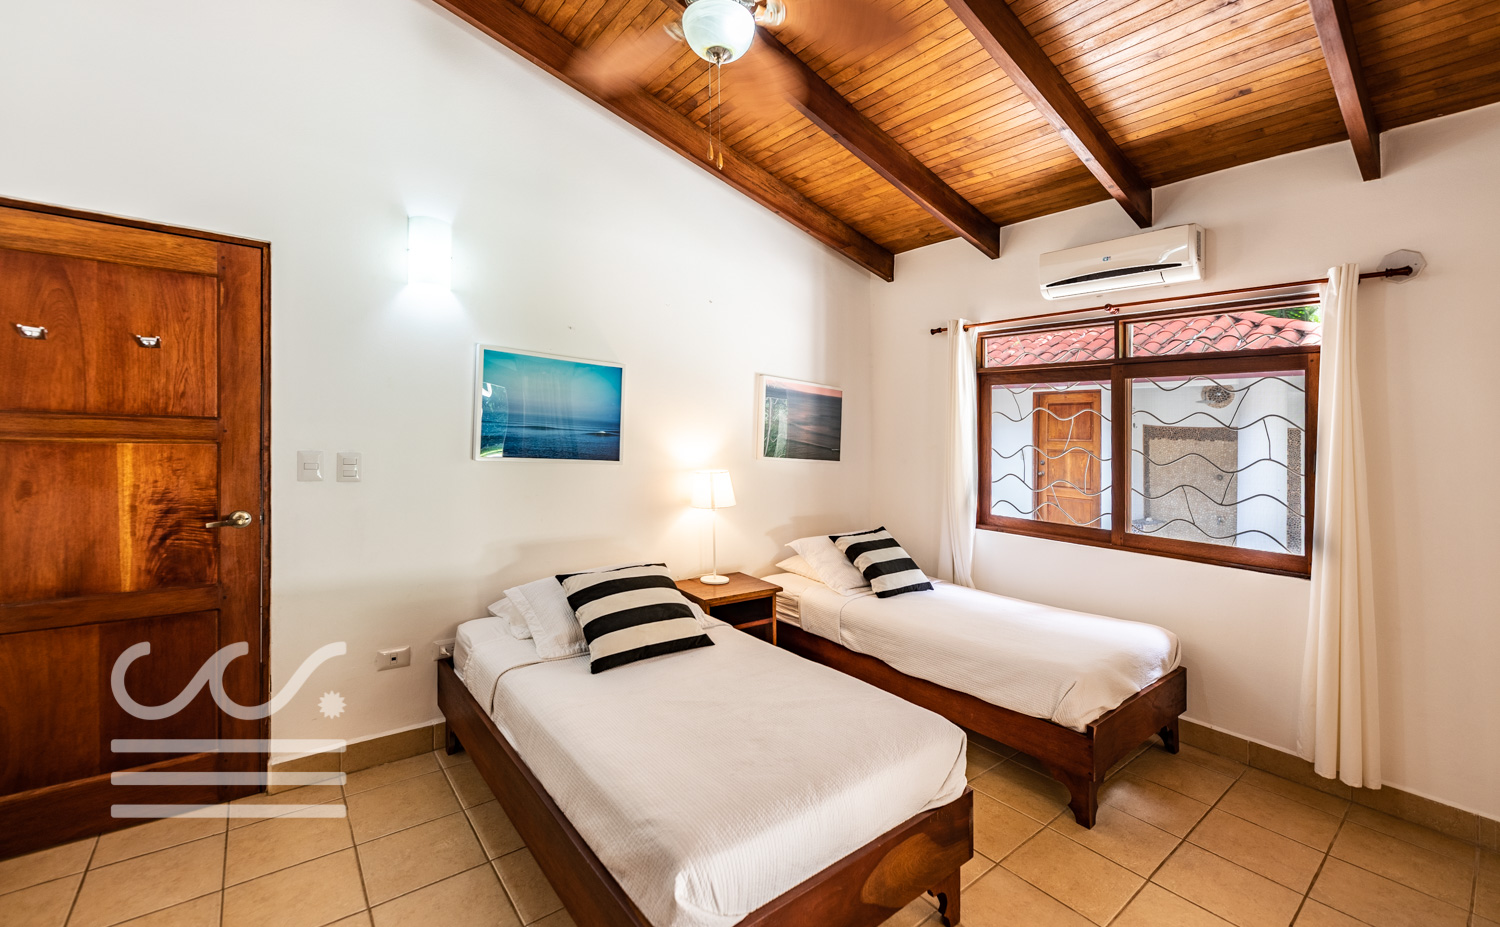 Casa-de-Sueño-Wanderlust-Realty-Real-Estate-Rentals-Nosara-Costa-Rica-35.jpg